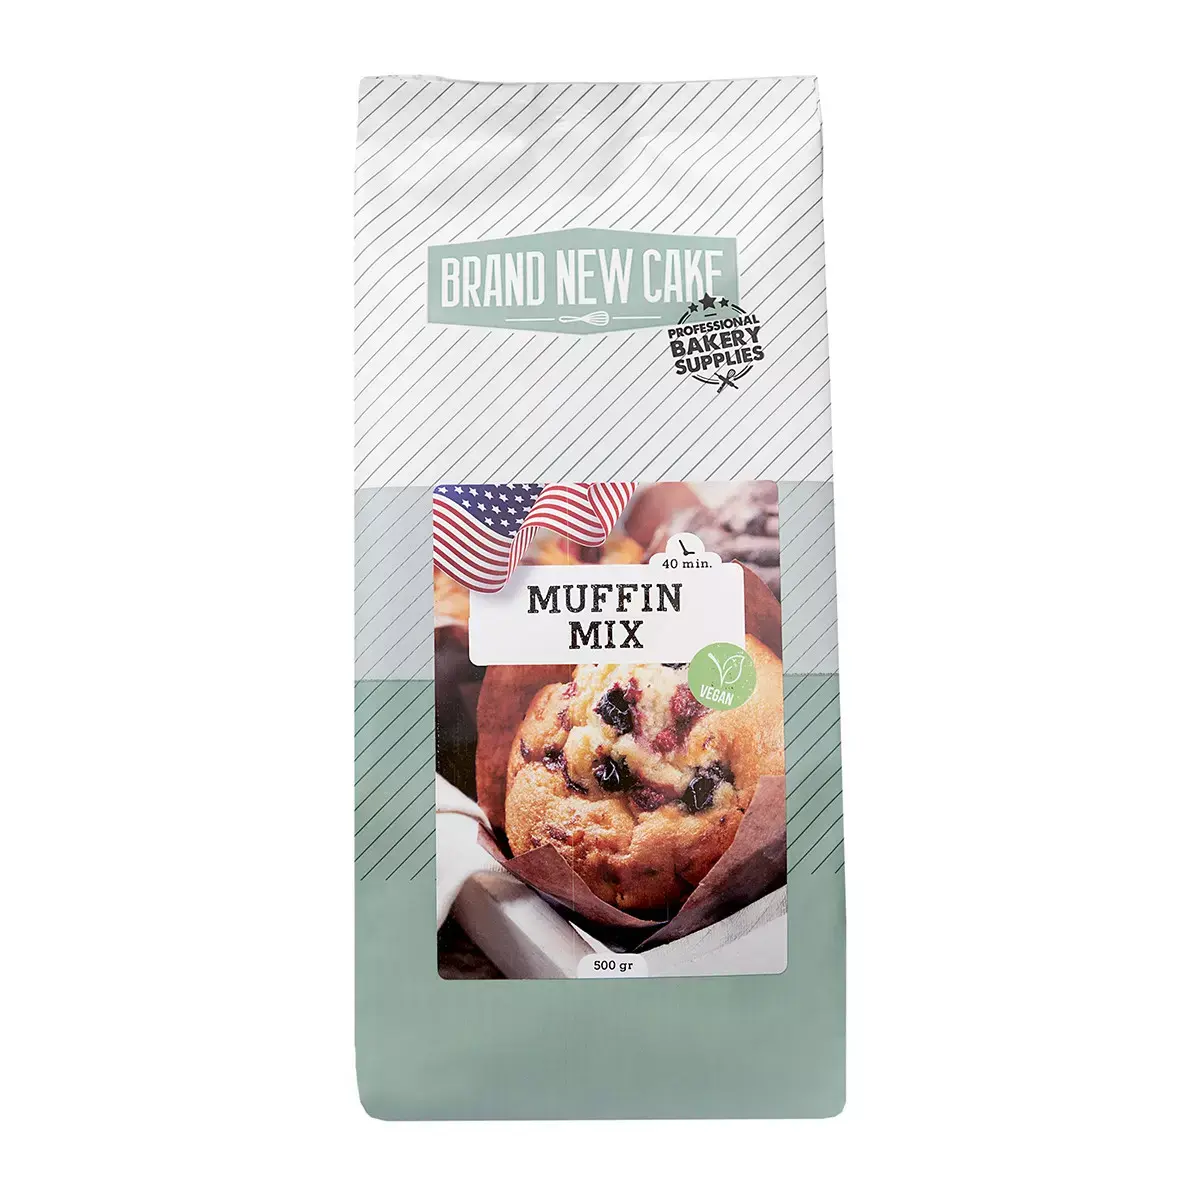 Brand New Cake Vegan Muffinmix 500g ( BrandNewCake )